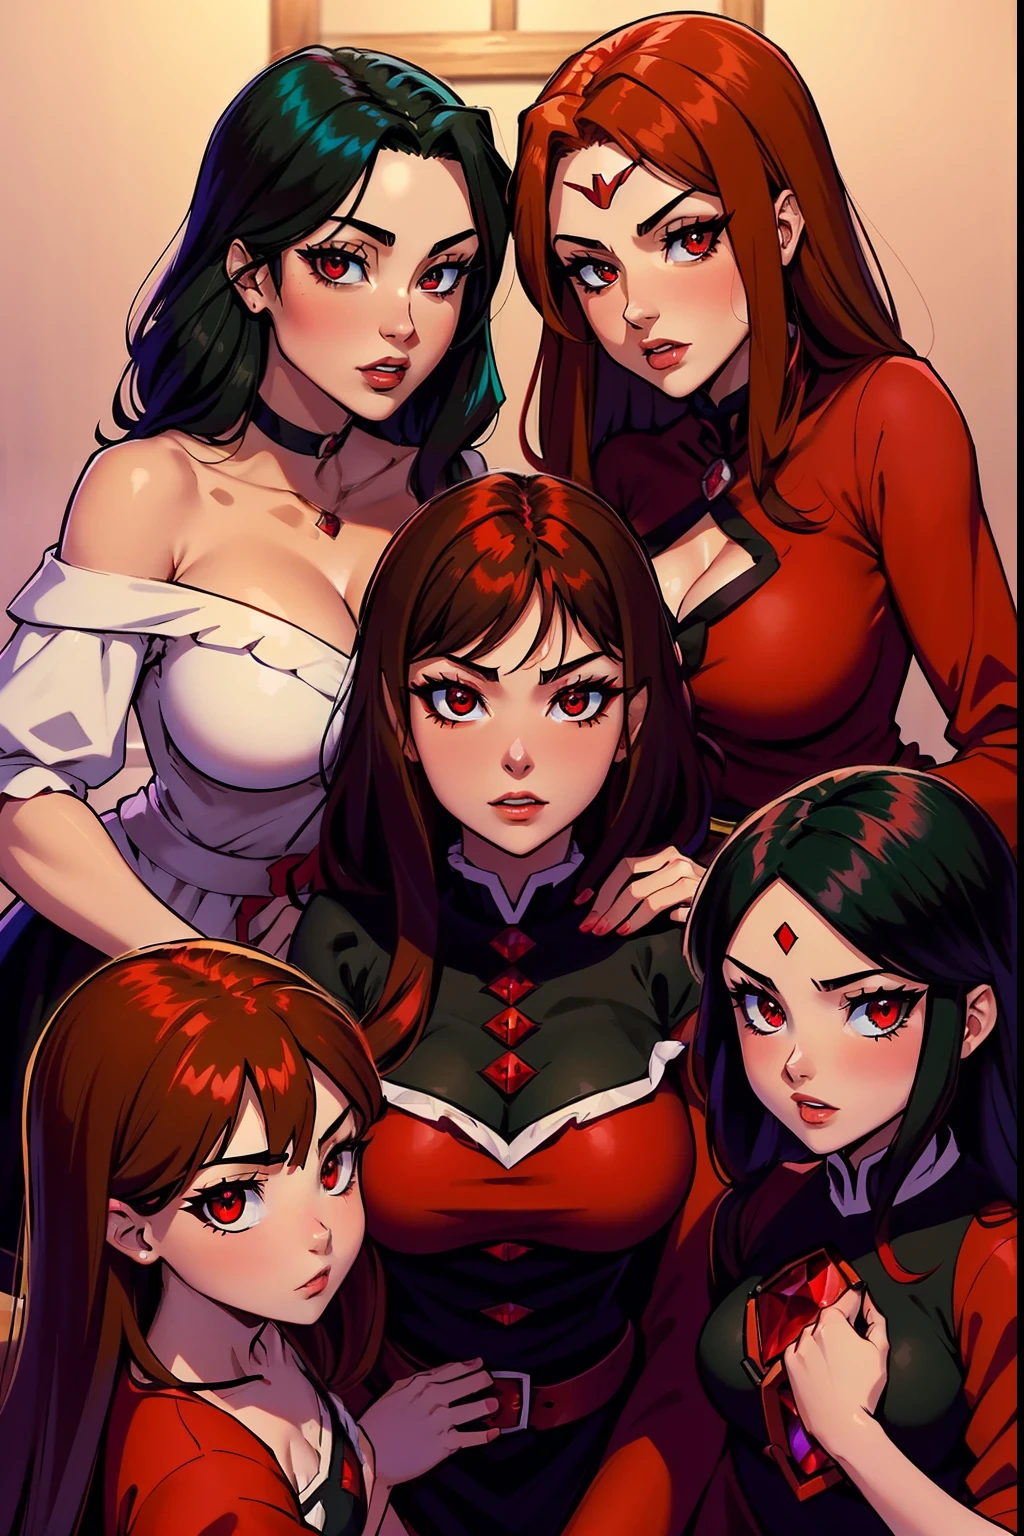 megumin (megumin have black hair, rote Augen) mit ihren drei kleinen Töchtern Esmeralda, Rubin, Aria Rose : (Esmeralda haben braune Haare , rote Augen). (Rubin have Red Hair, grüne Augen), (Aria Rose haben schwarzes Haar, blaue Augen)